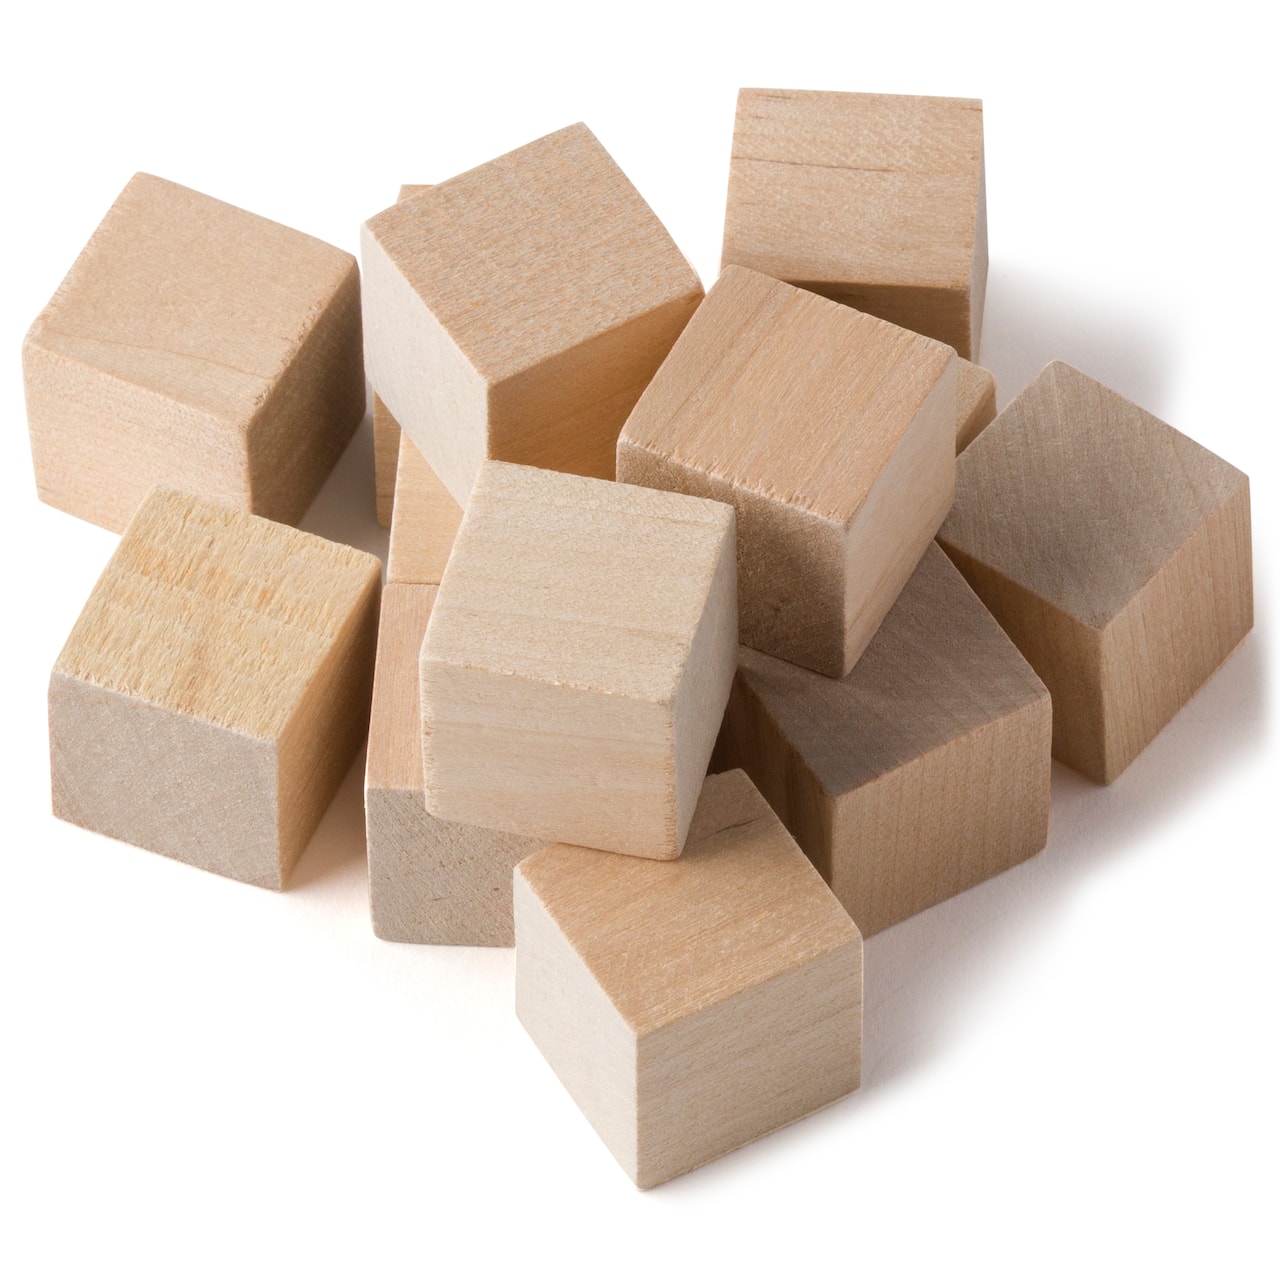 1&#x22; Square Wood Blocks by Make Market&#xAE;